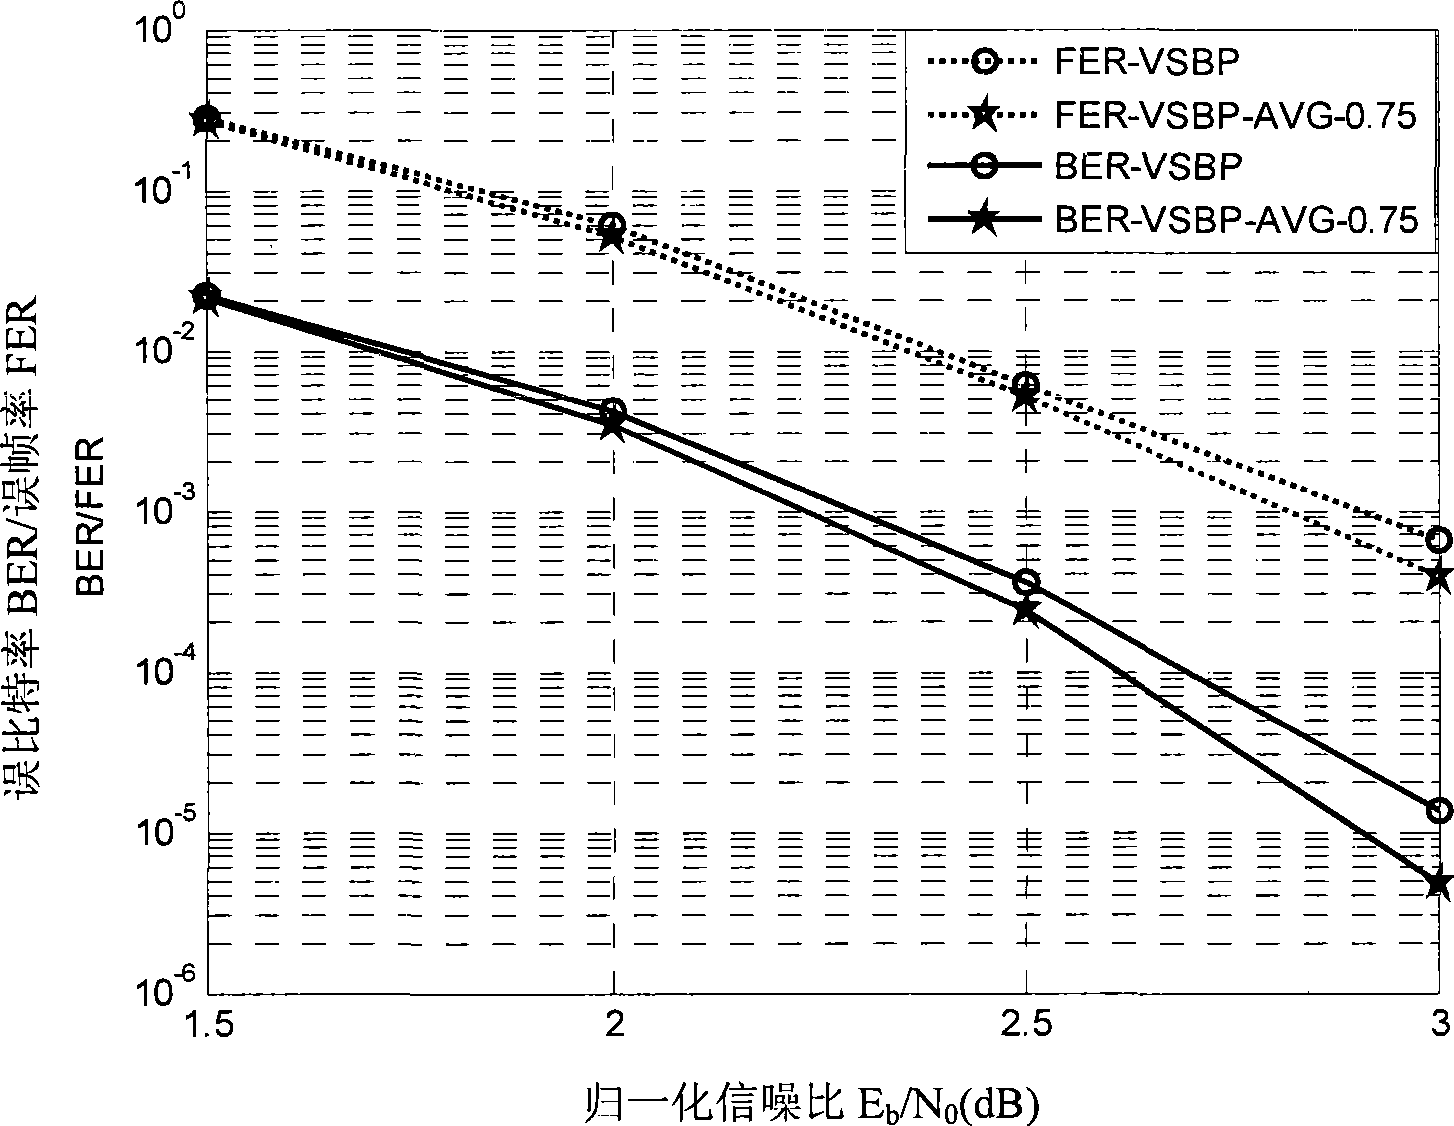 Serial interpretation method for low density parity check code